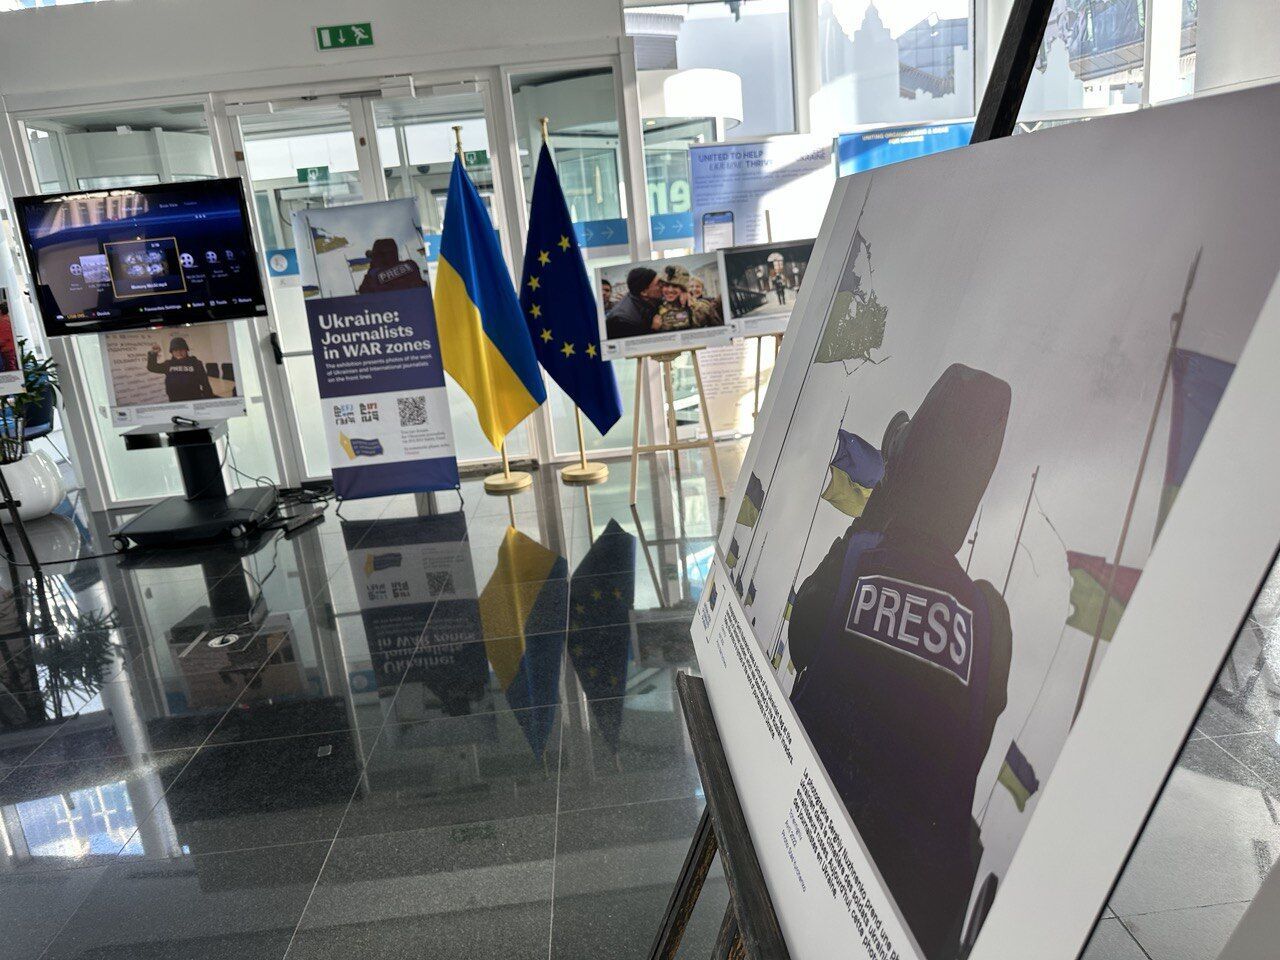 "Україна: журналісти в зонах бойових дій": у Брюсселі запрацювала фотовиставка НСЖУ